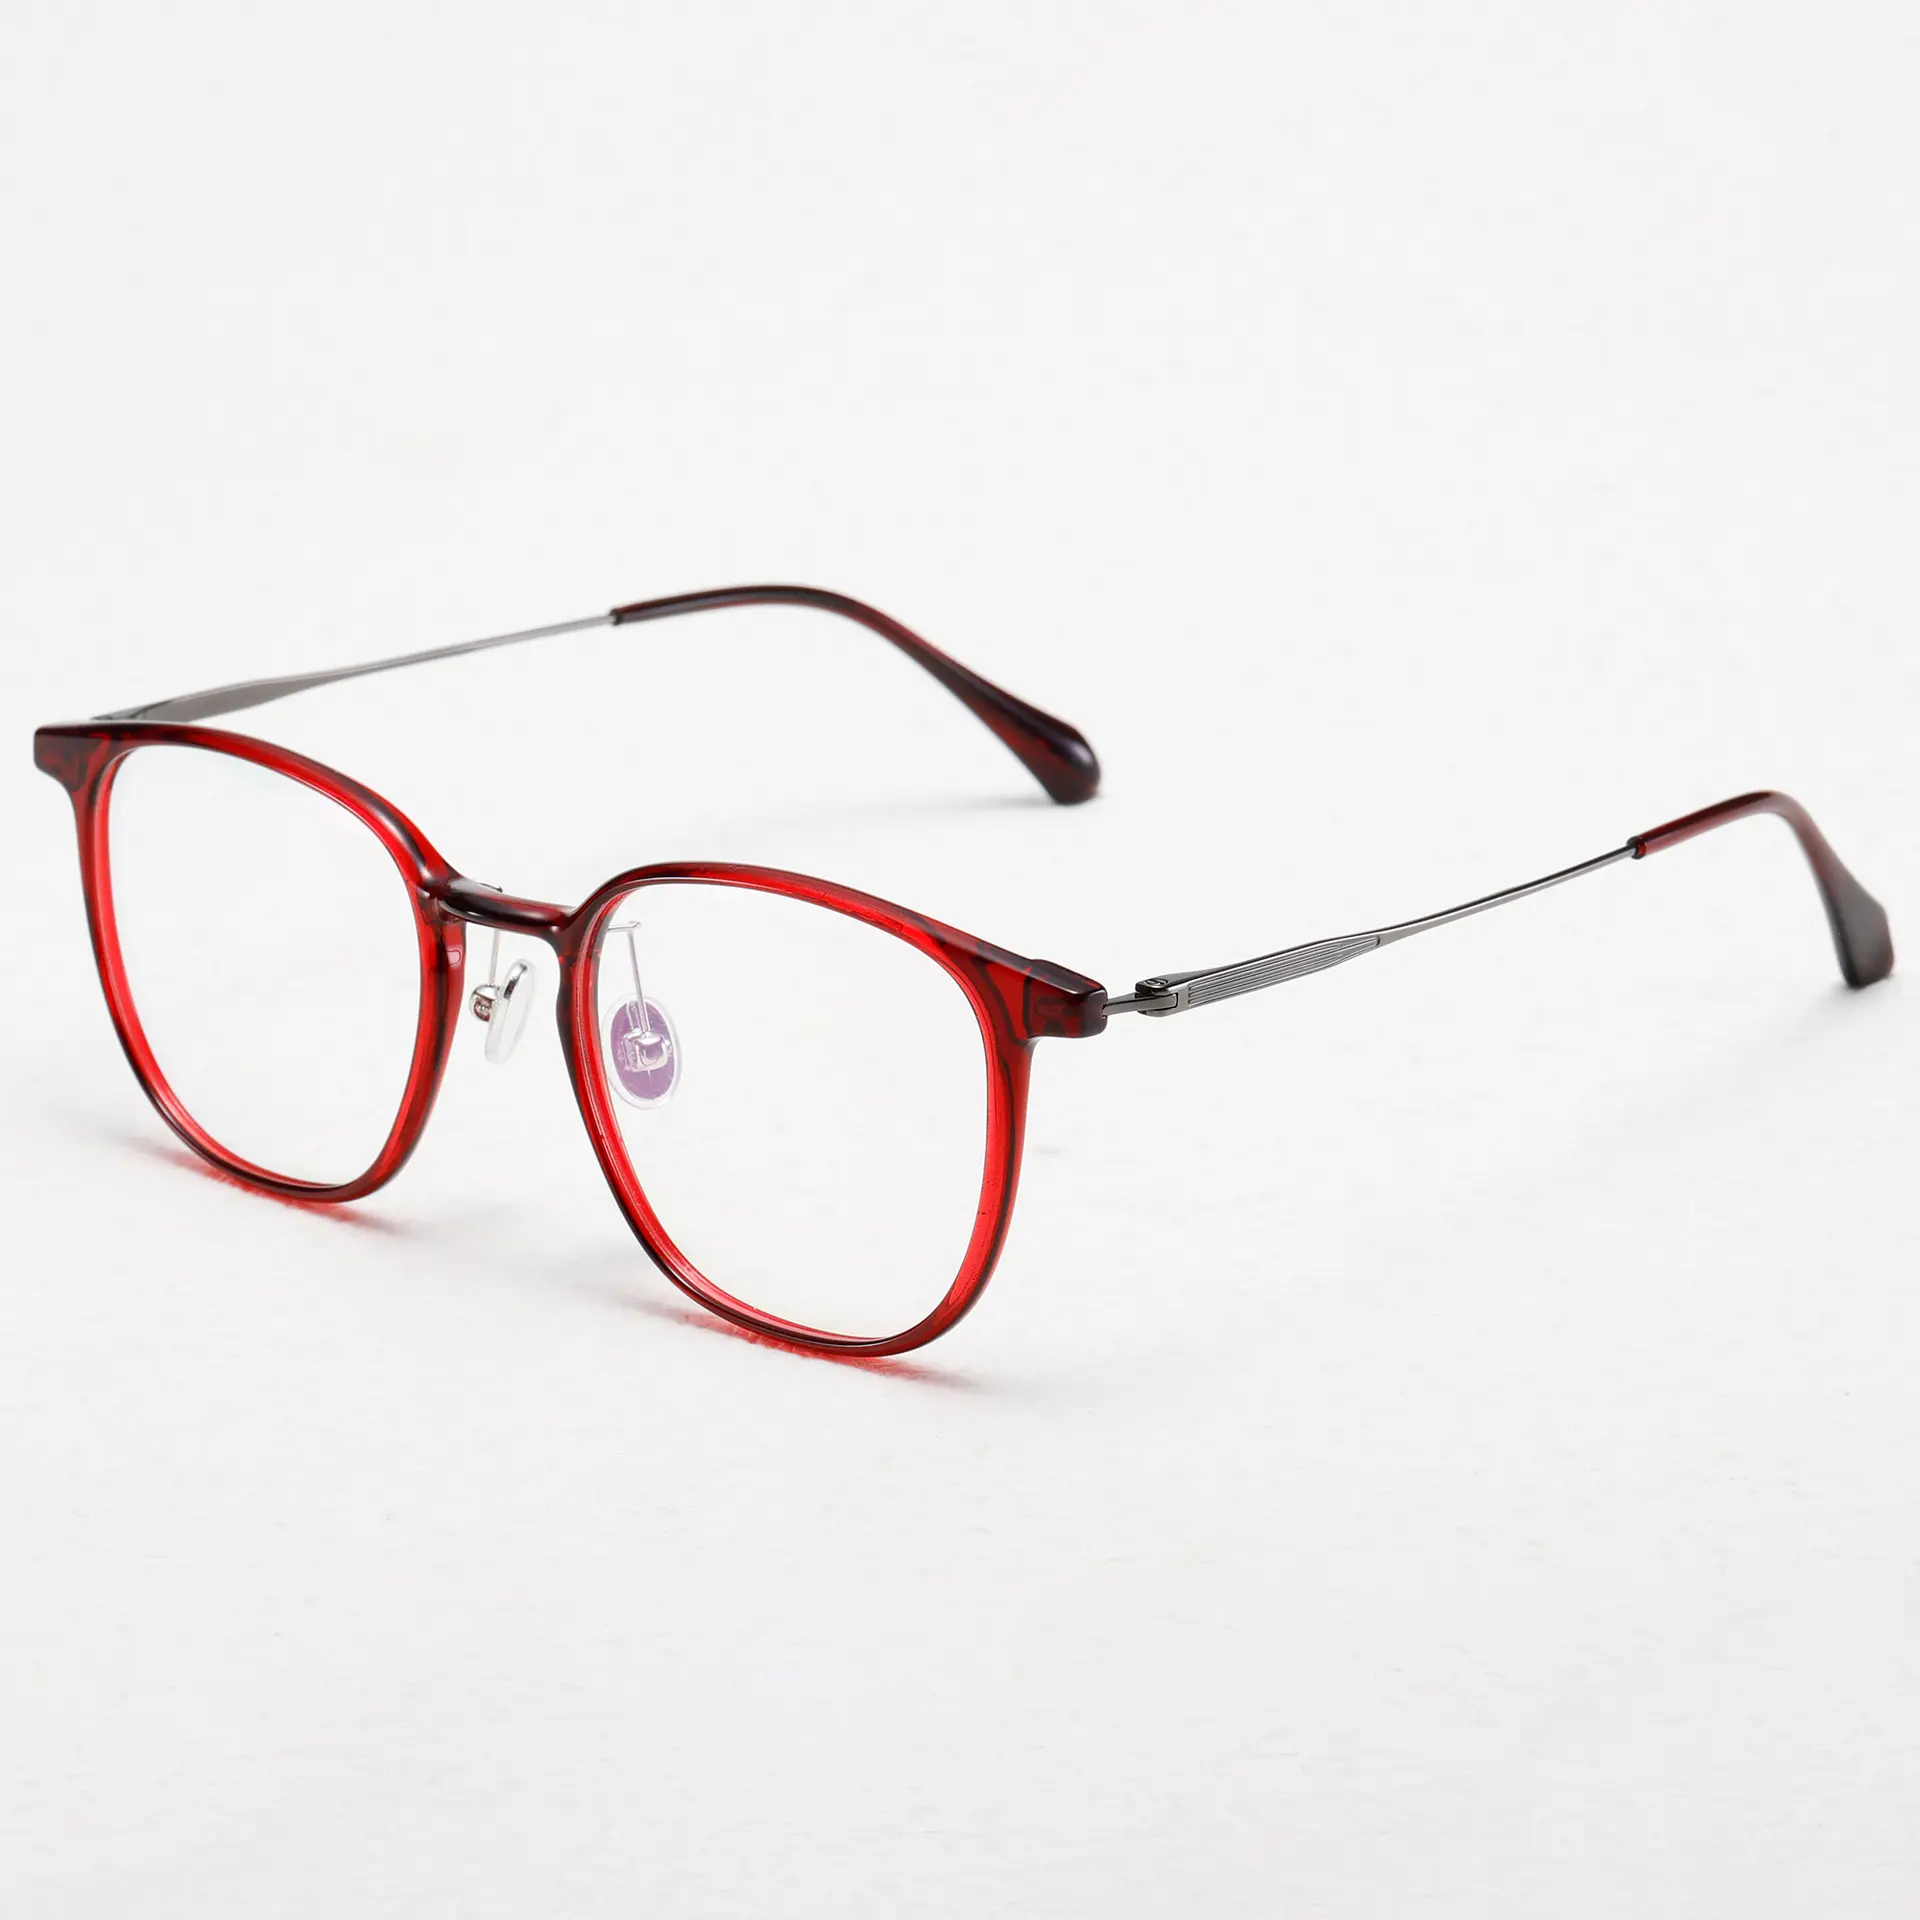 Occhiali classici TR90 per acquirenti alla moda Designer occhiali da vista montature di ispirazione Vintage all'ingrosso